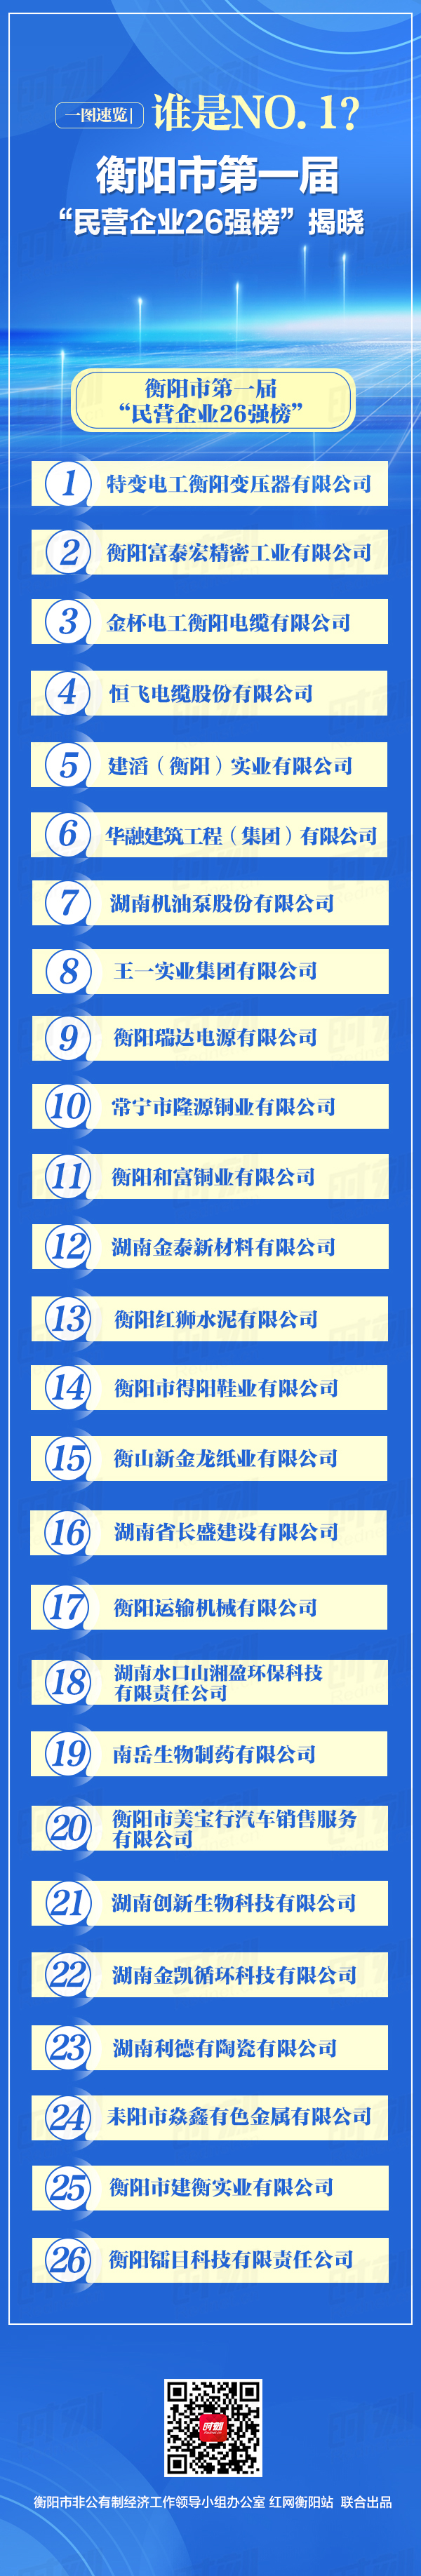 衡阳市第一届“民营企业26强”榜-2.jpg